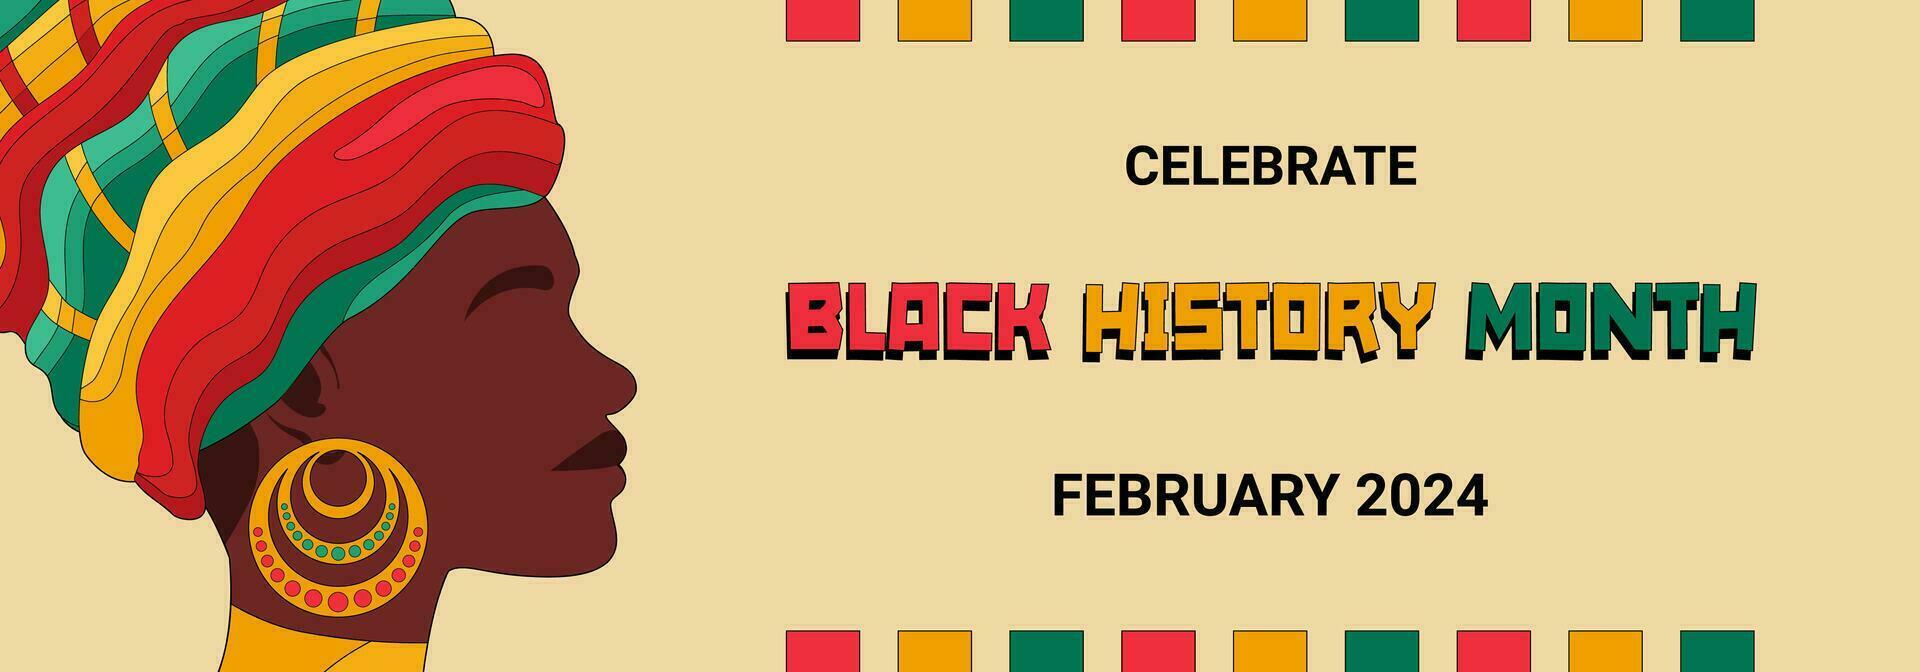 svart historia månad baner med svart kvinna ansikte profil och text med nationell Färg av afrika flagga, svart historia månad firande affisch. vektor illustration.